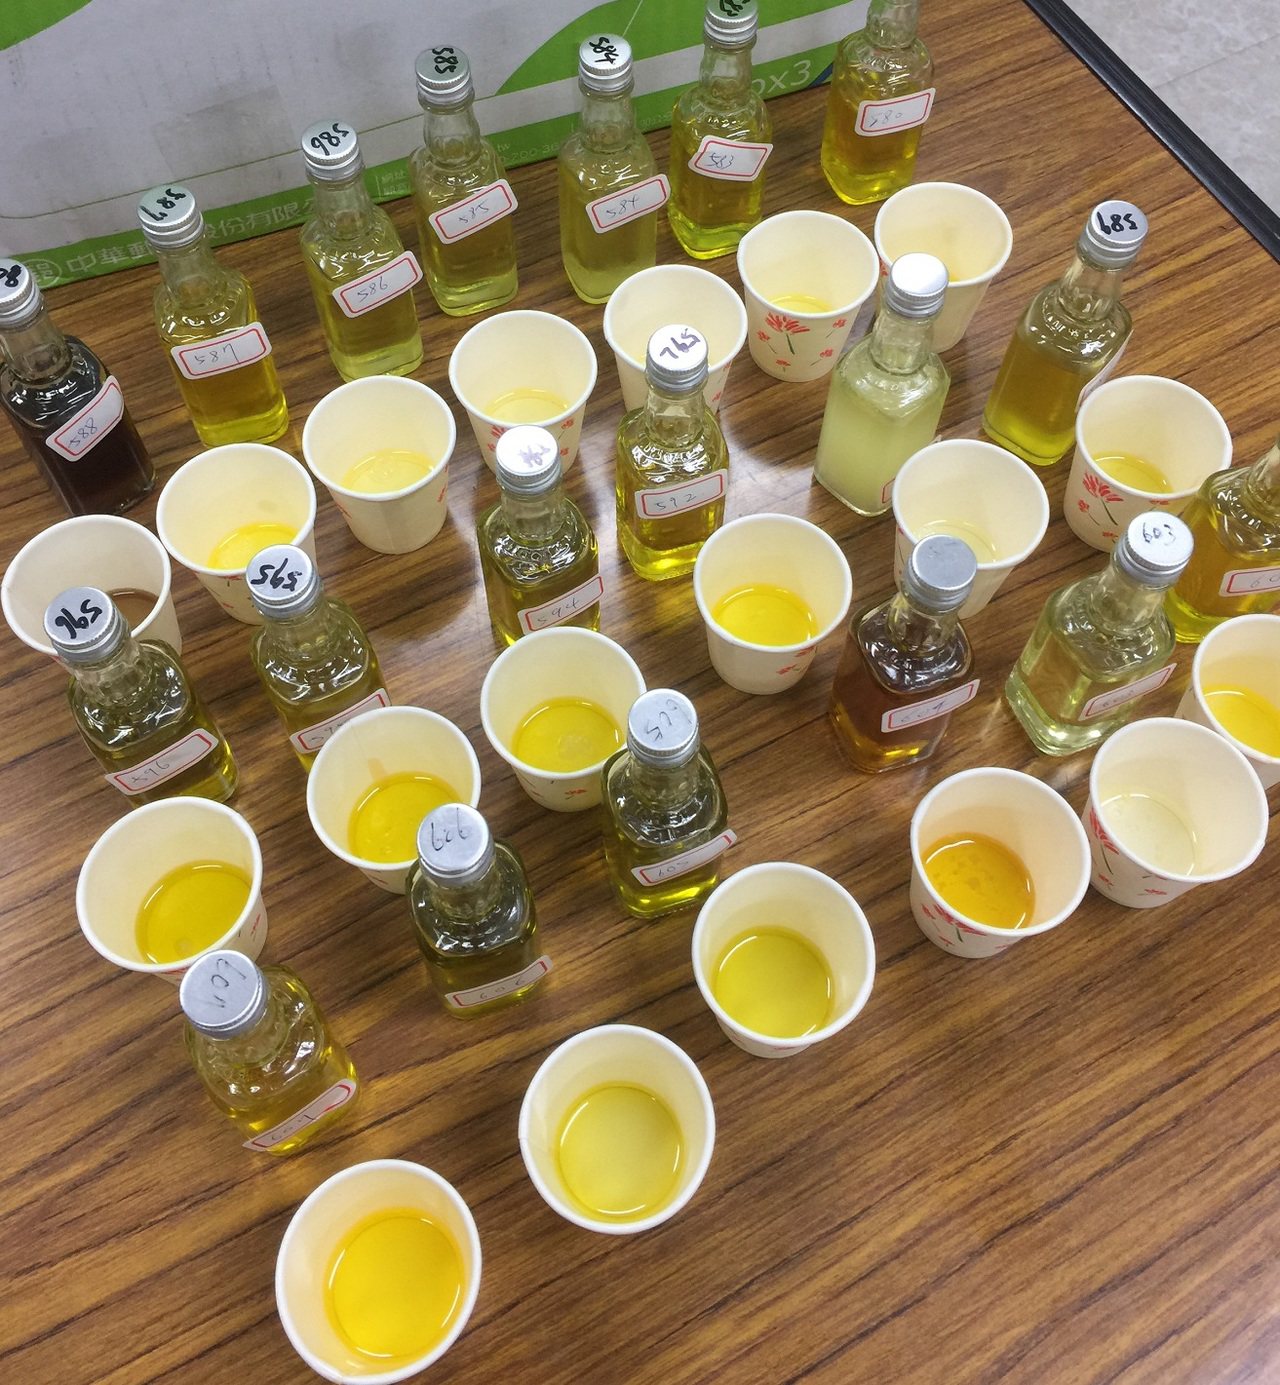 農委會茶改場參考歐洲橄欖油評鑑分級方式，建立屬於台灣茶油的感官品評系統方法，可作為日後茶油體驗推廣及品質分級的依據。茶改場/提供